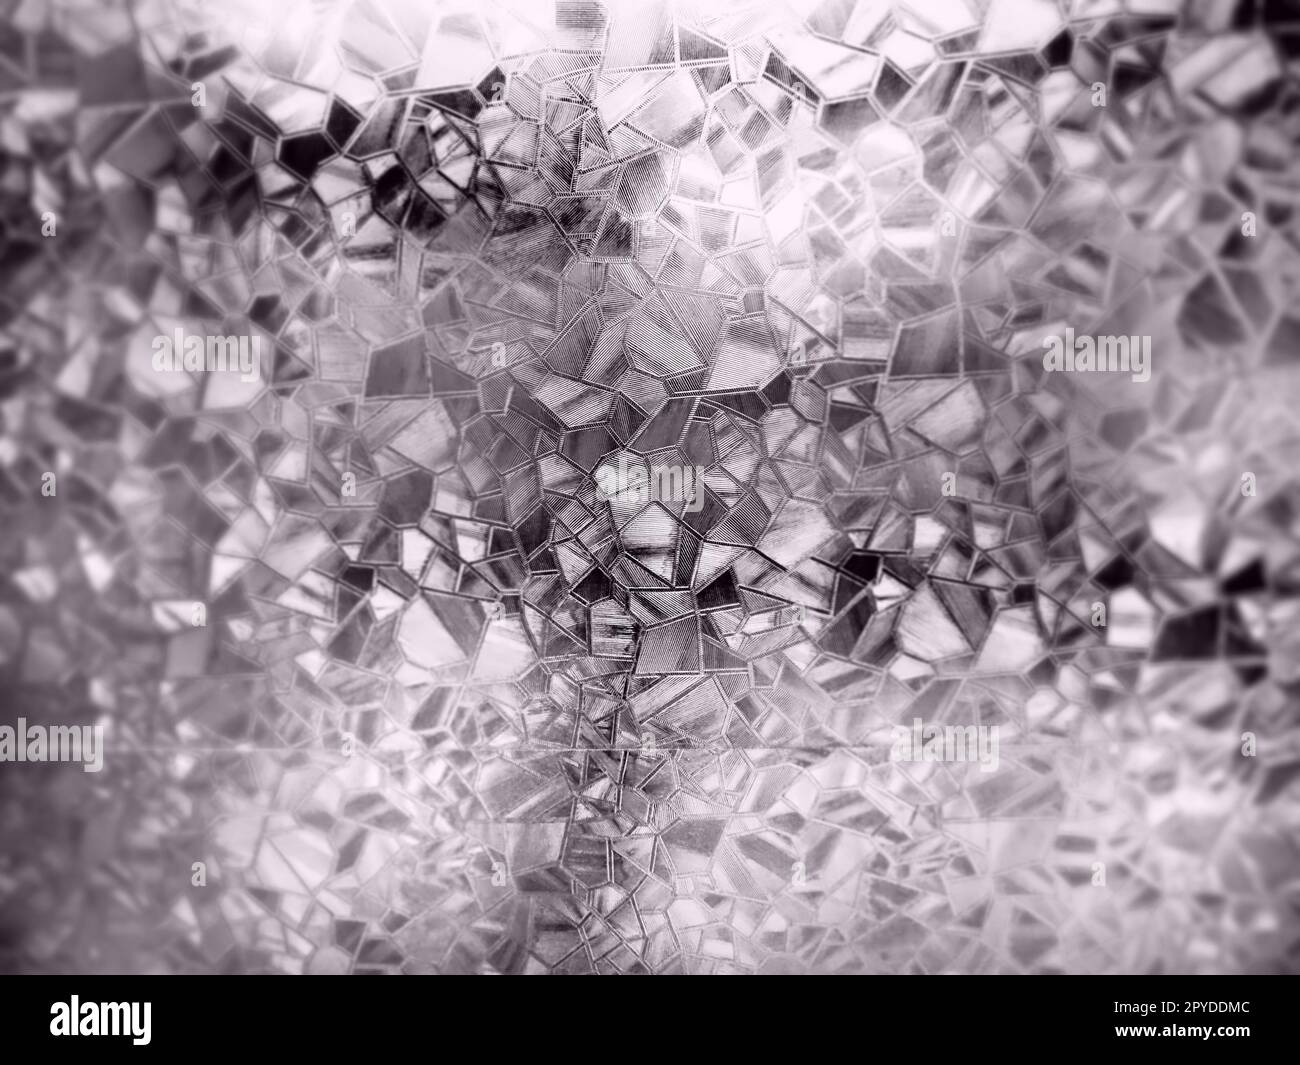 Geprägter Glashintergrund. Wellglas Sepia monochrom. Lichtbrechung auf einer holprigen, transparenten Oberfläche unter Hintergrundbeleuchtung. Das Spiel der Highlights. Schwarze braune Bereiche. Abstrakter Hintergrund Stockfoto